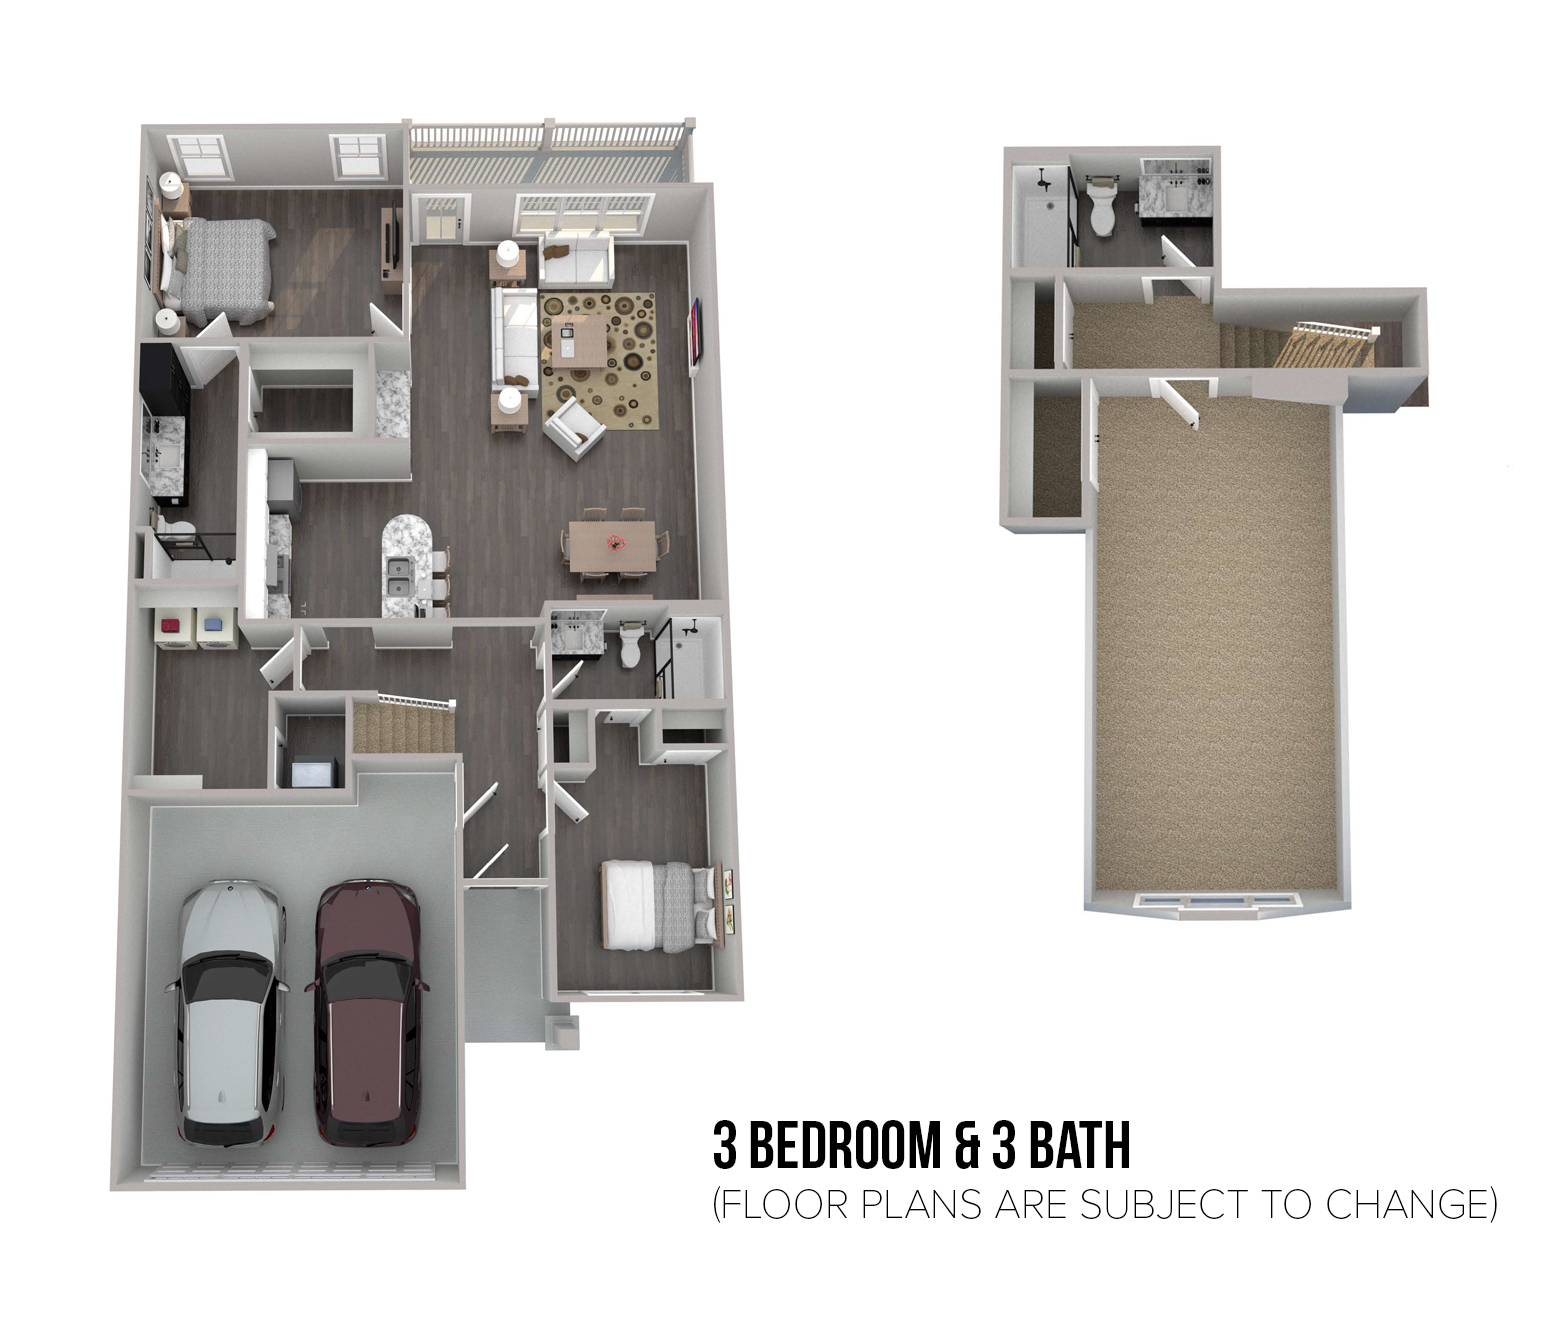 Floorplan - 3 Bedroom & 3 Bath image